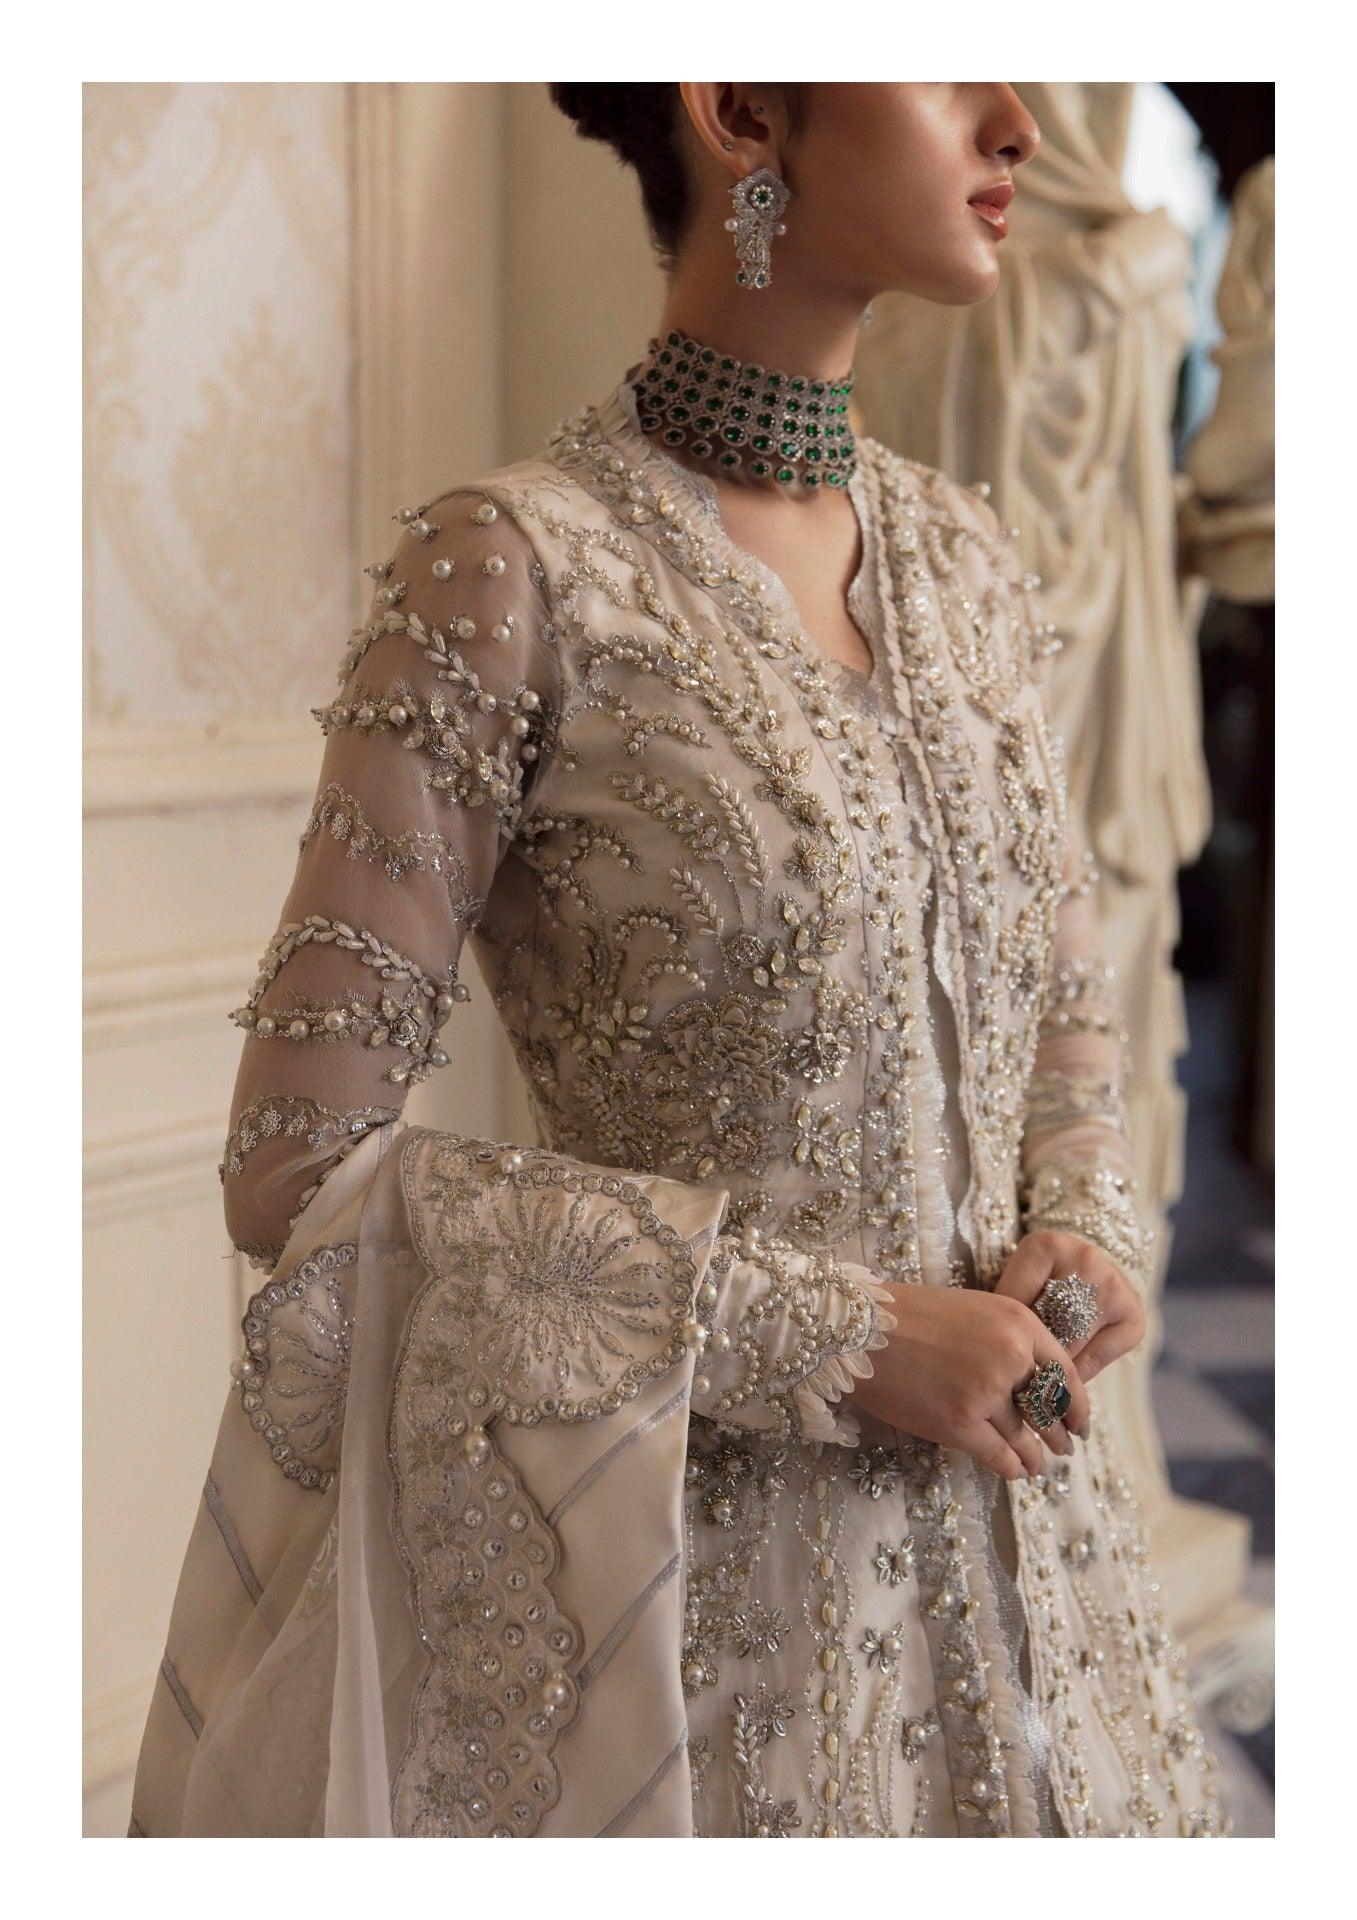 Un Pavot - WU3 - Claire De Lune Wedding by Republic Womenswear - Un Pavot - WU3 - Claire De Lune Wedding by Republic Womenswear - Shahana Collection